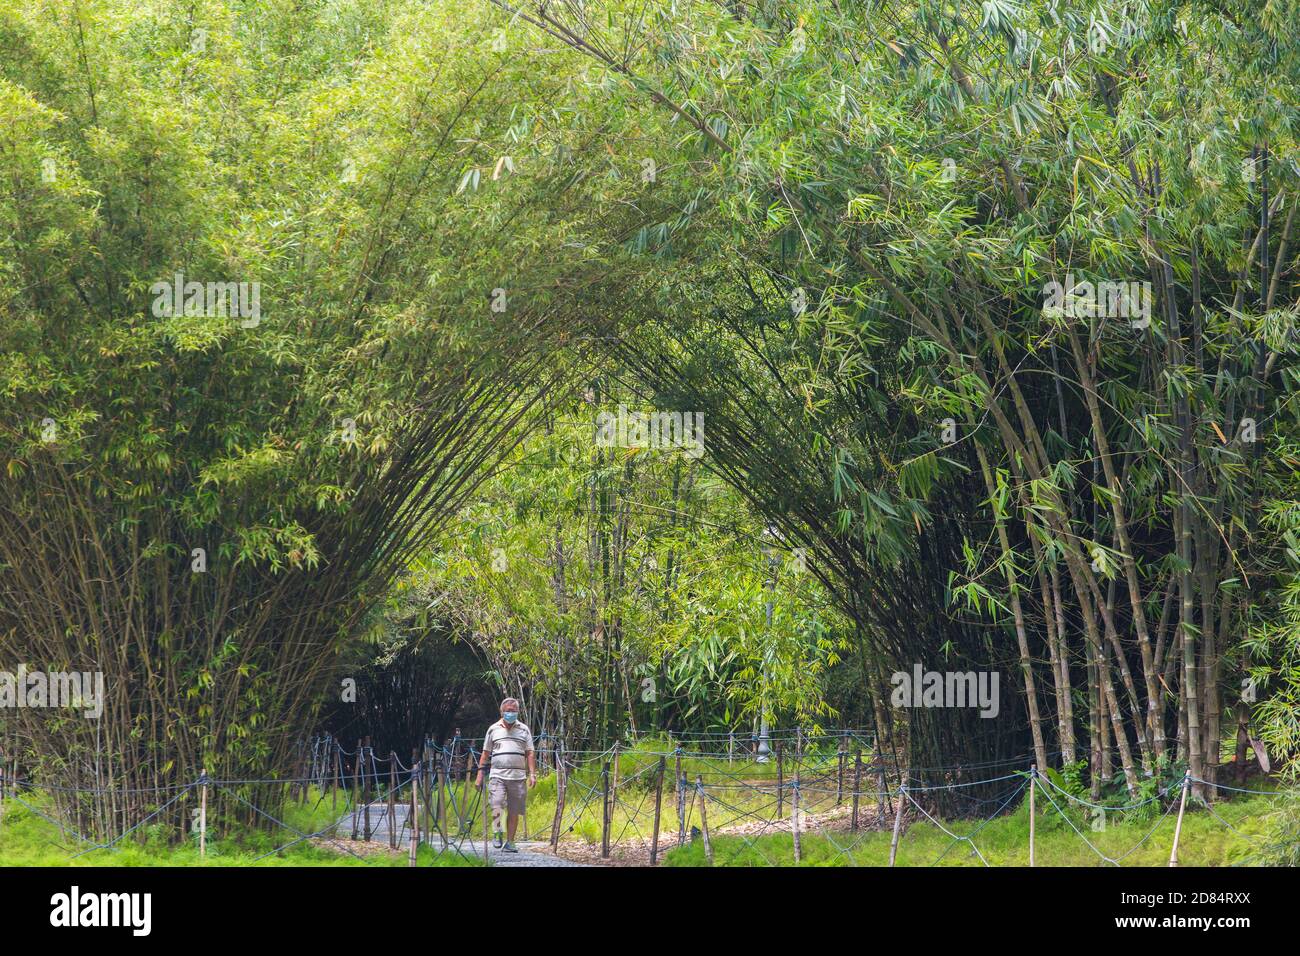 Un uomo cinese di mezza età indossa una maschera nel parco, sta camminando attraverso uno splendido panorama di alberi a baldacchino. Foto Stock